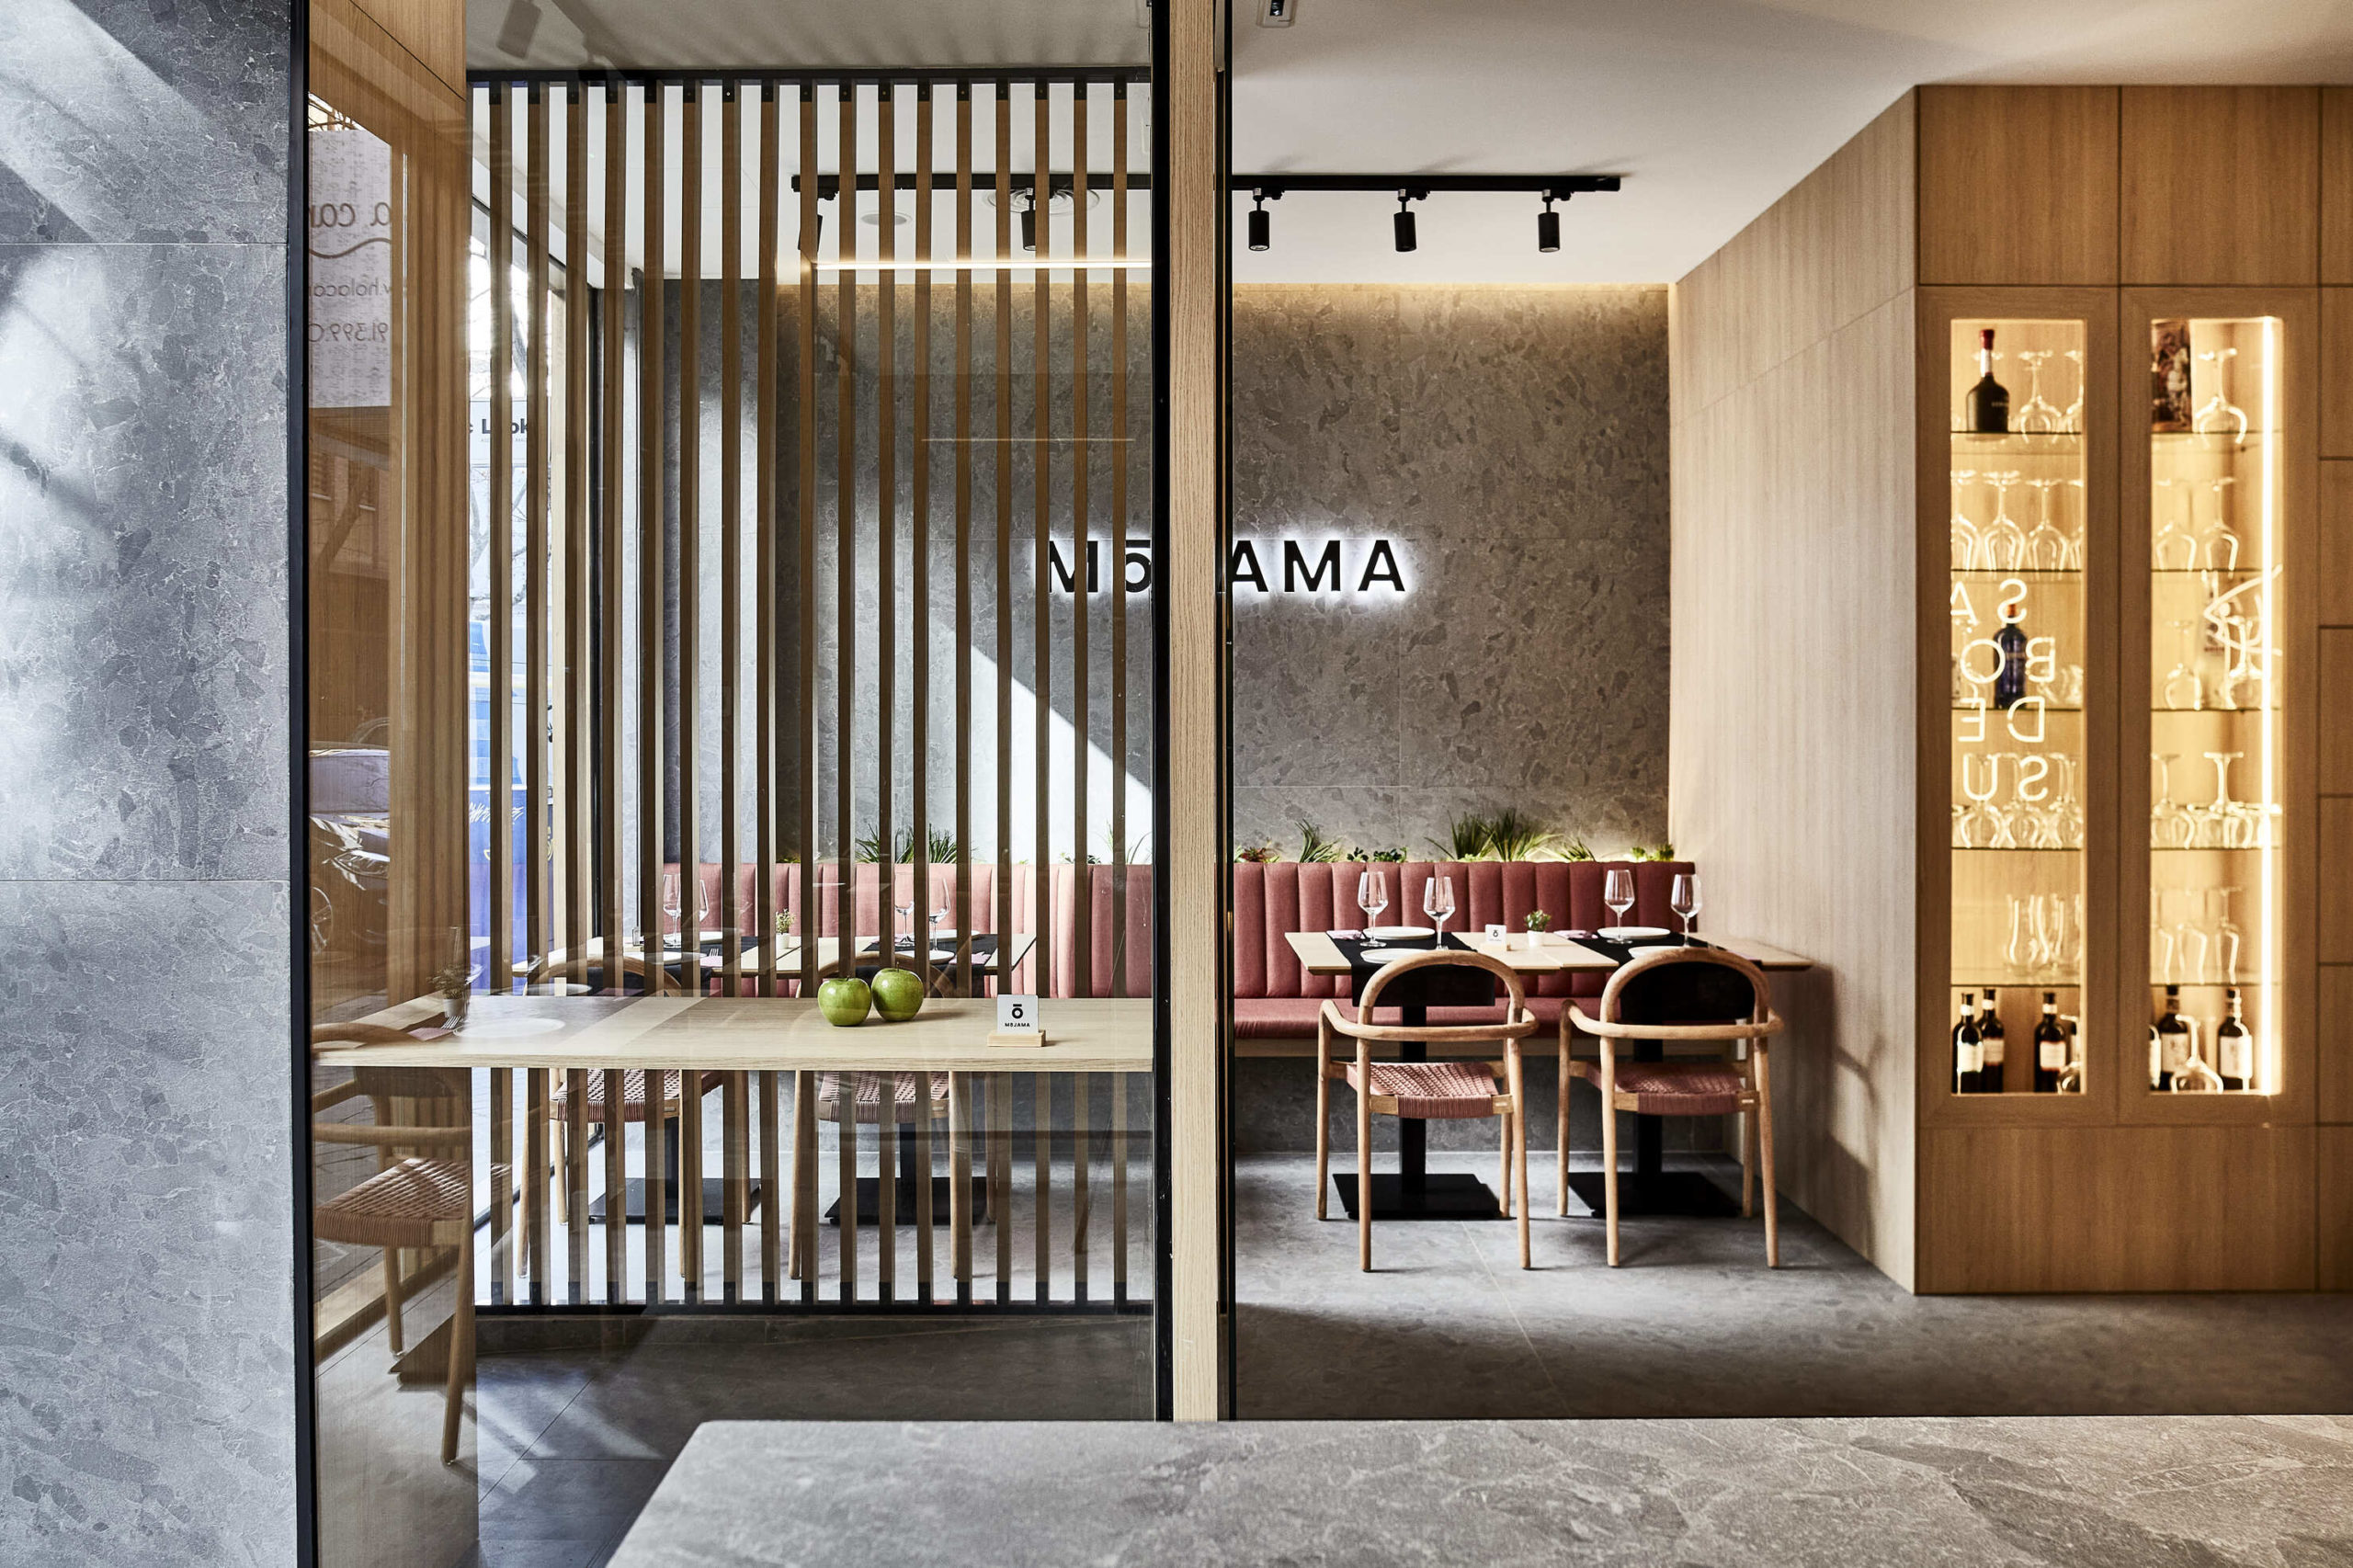 Proyecto Binomio Arquitectura - Restaurante Mojama